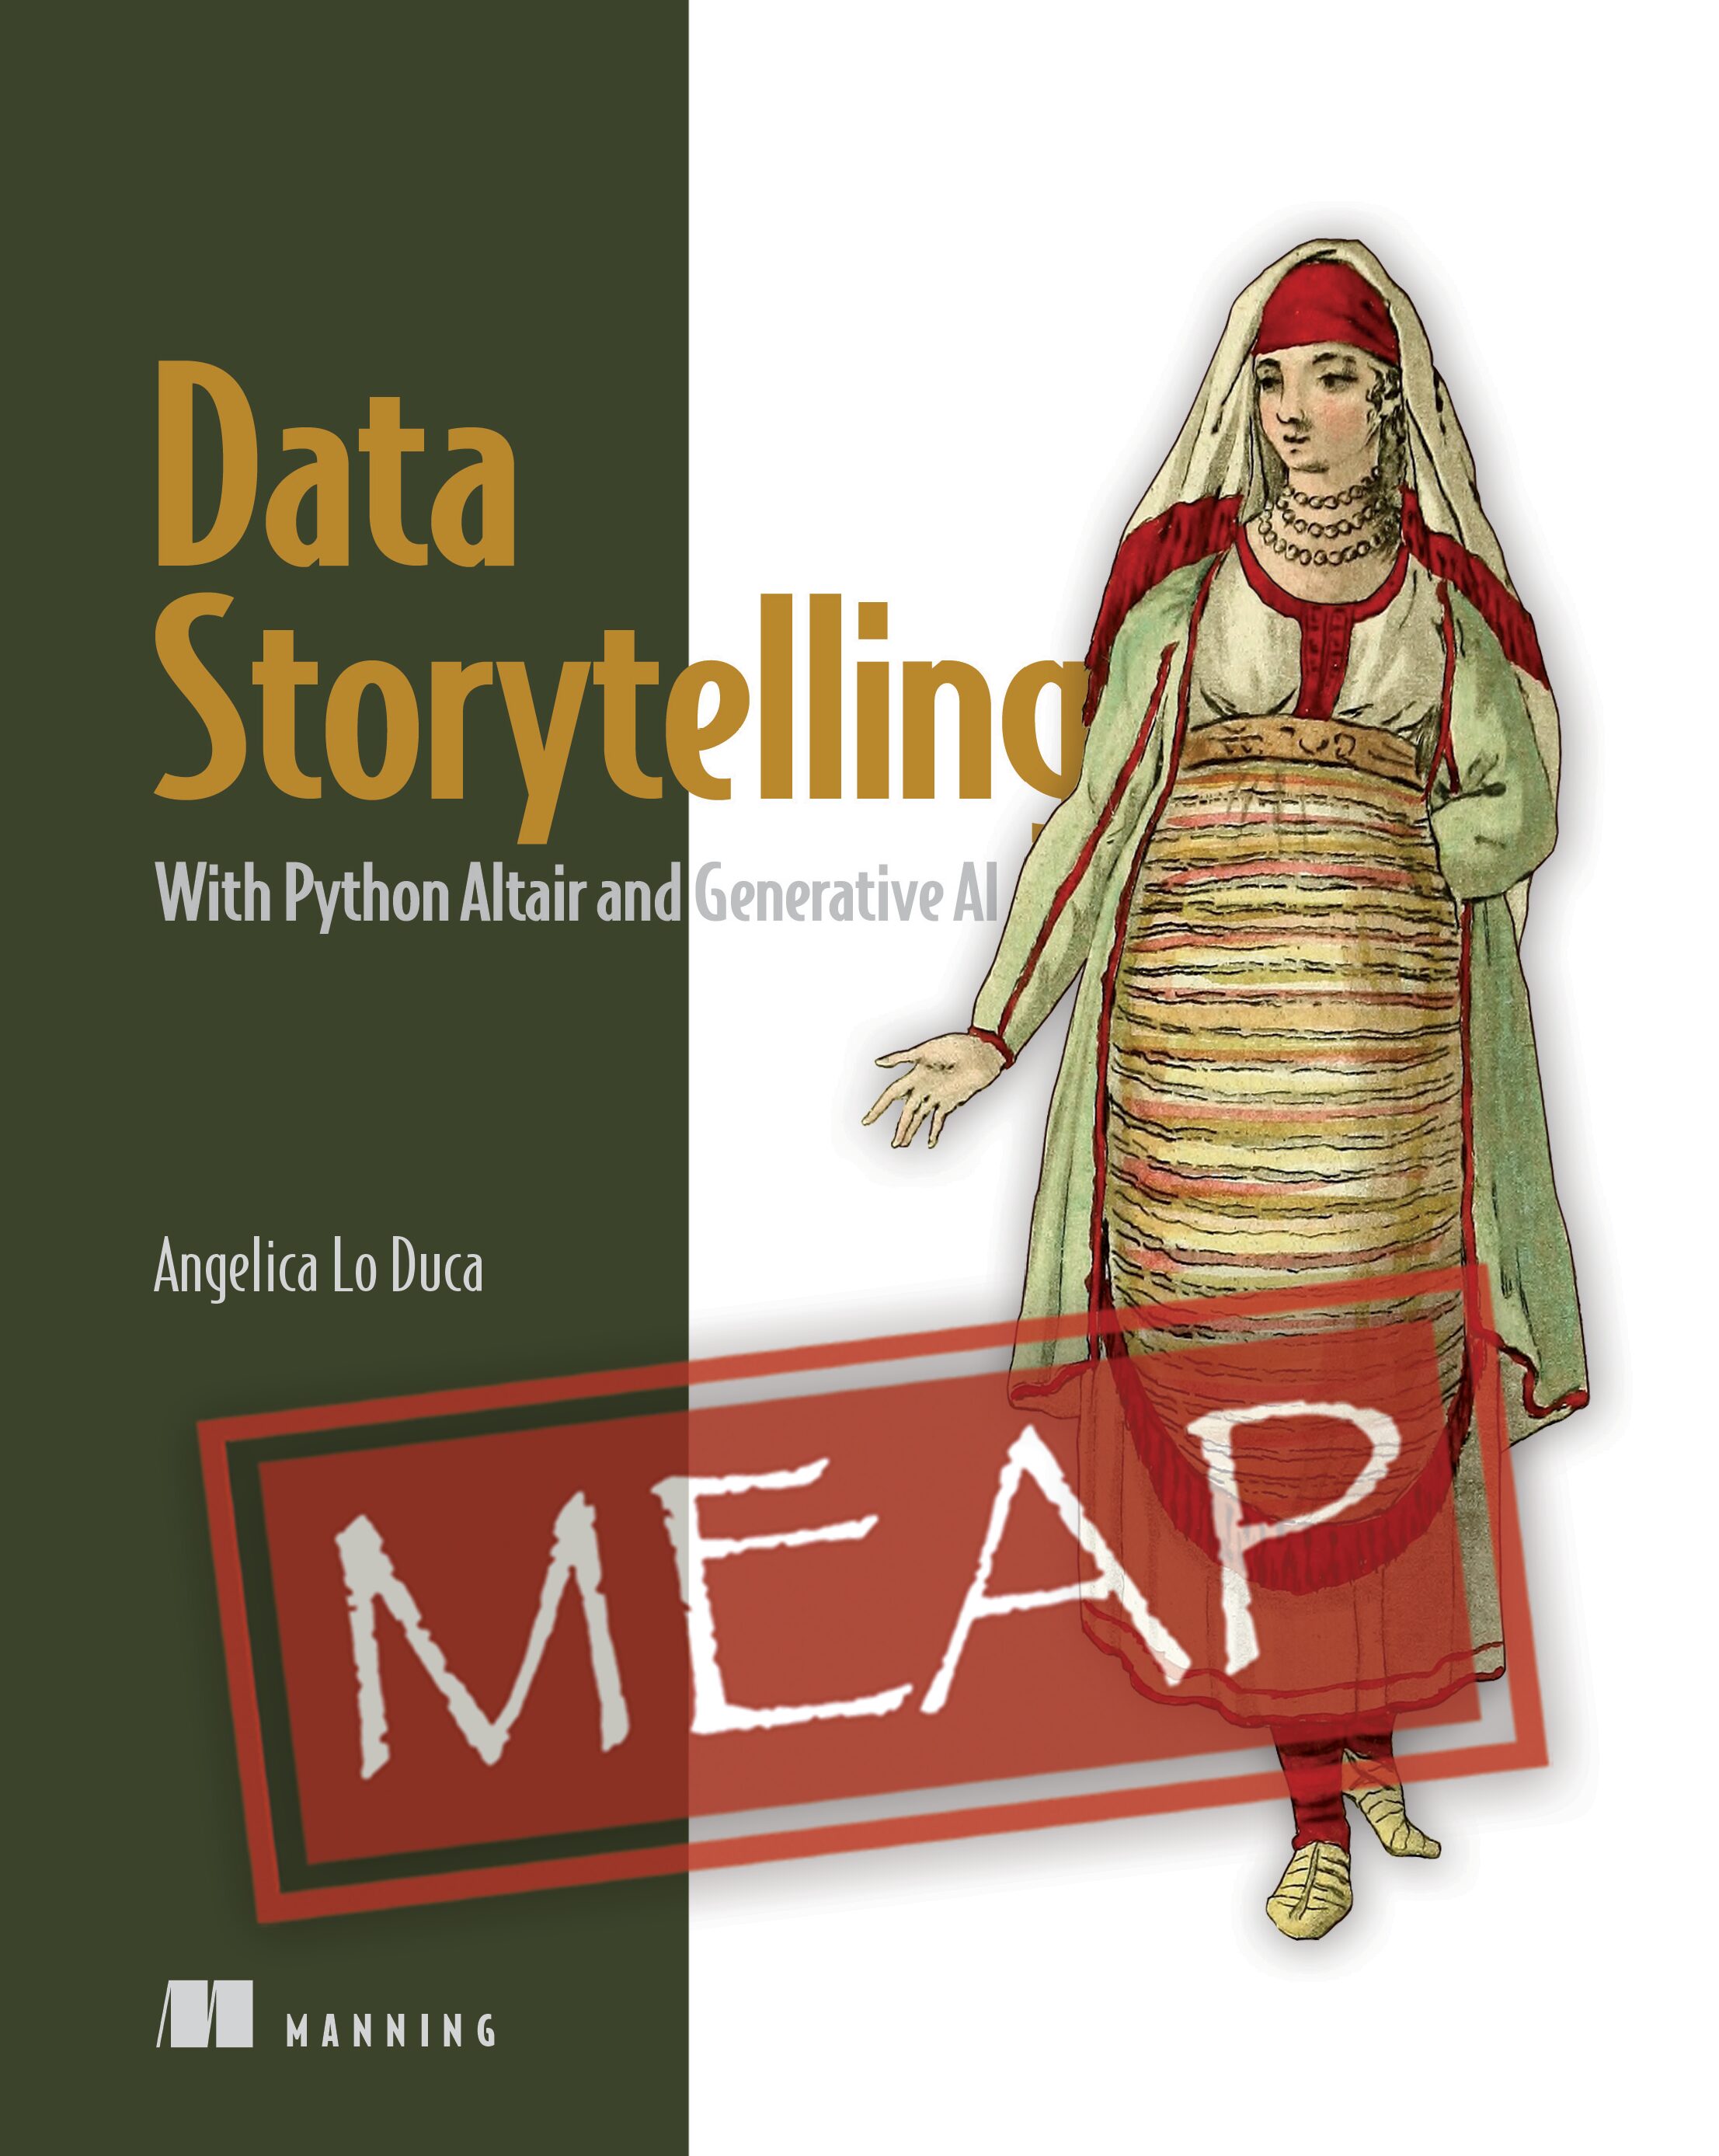 Data storytelling - de kunst van het vertellen van verhalen door middel van data